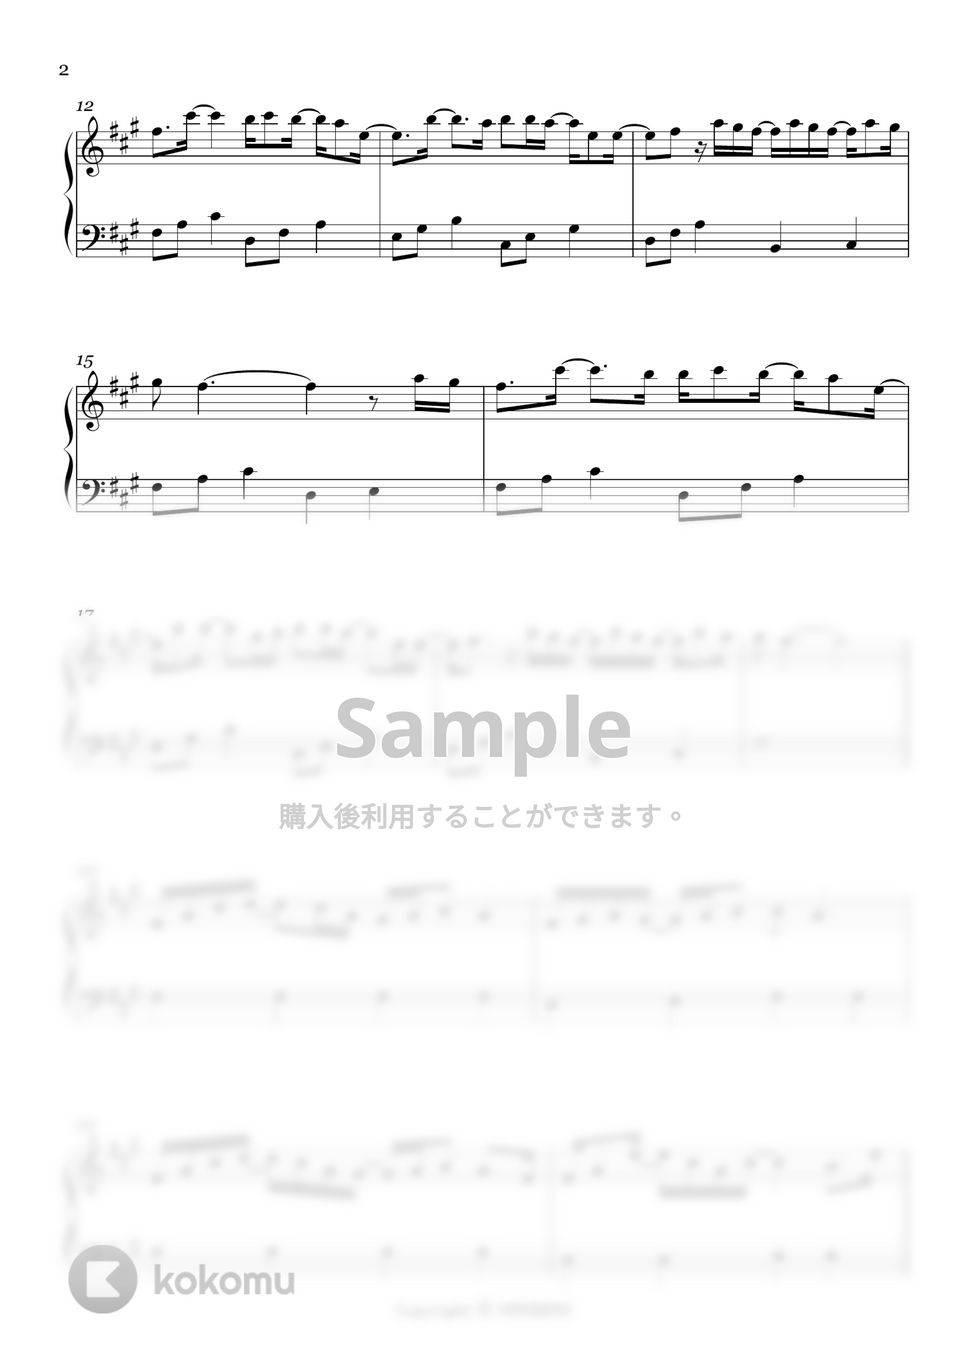 アラジン - スピーチレス〜心の声 (Easy ver.) by MINIBINI